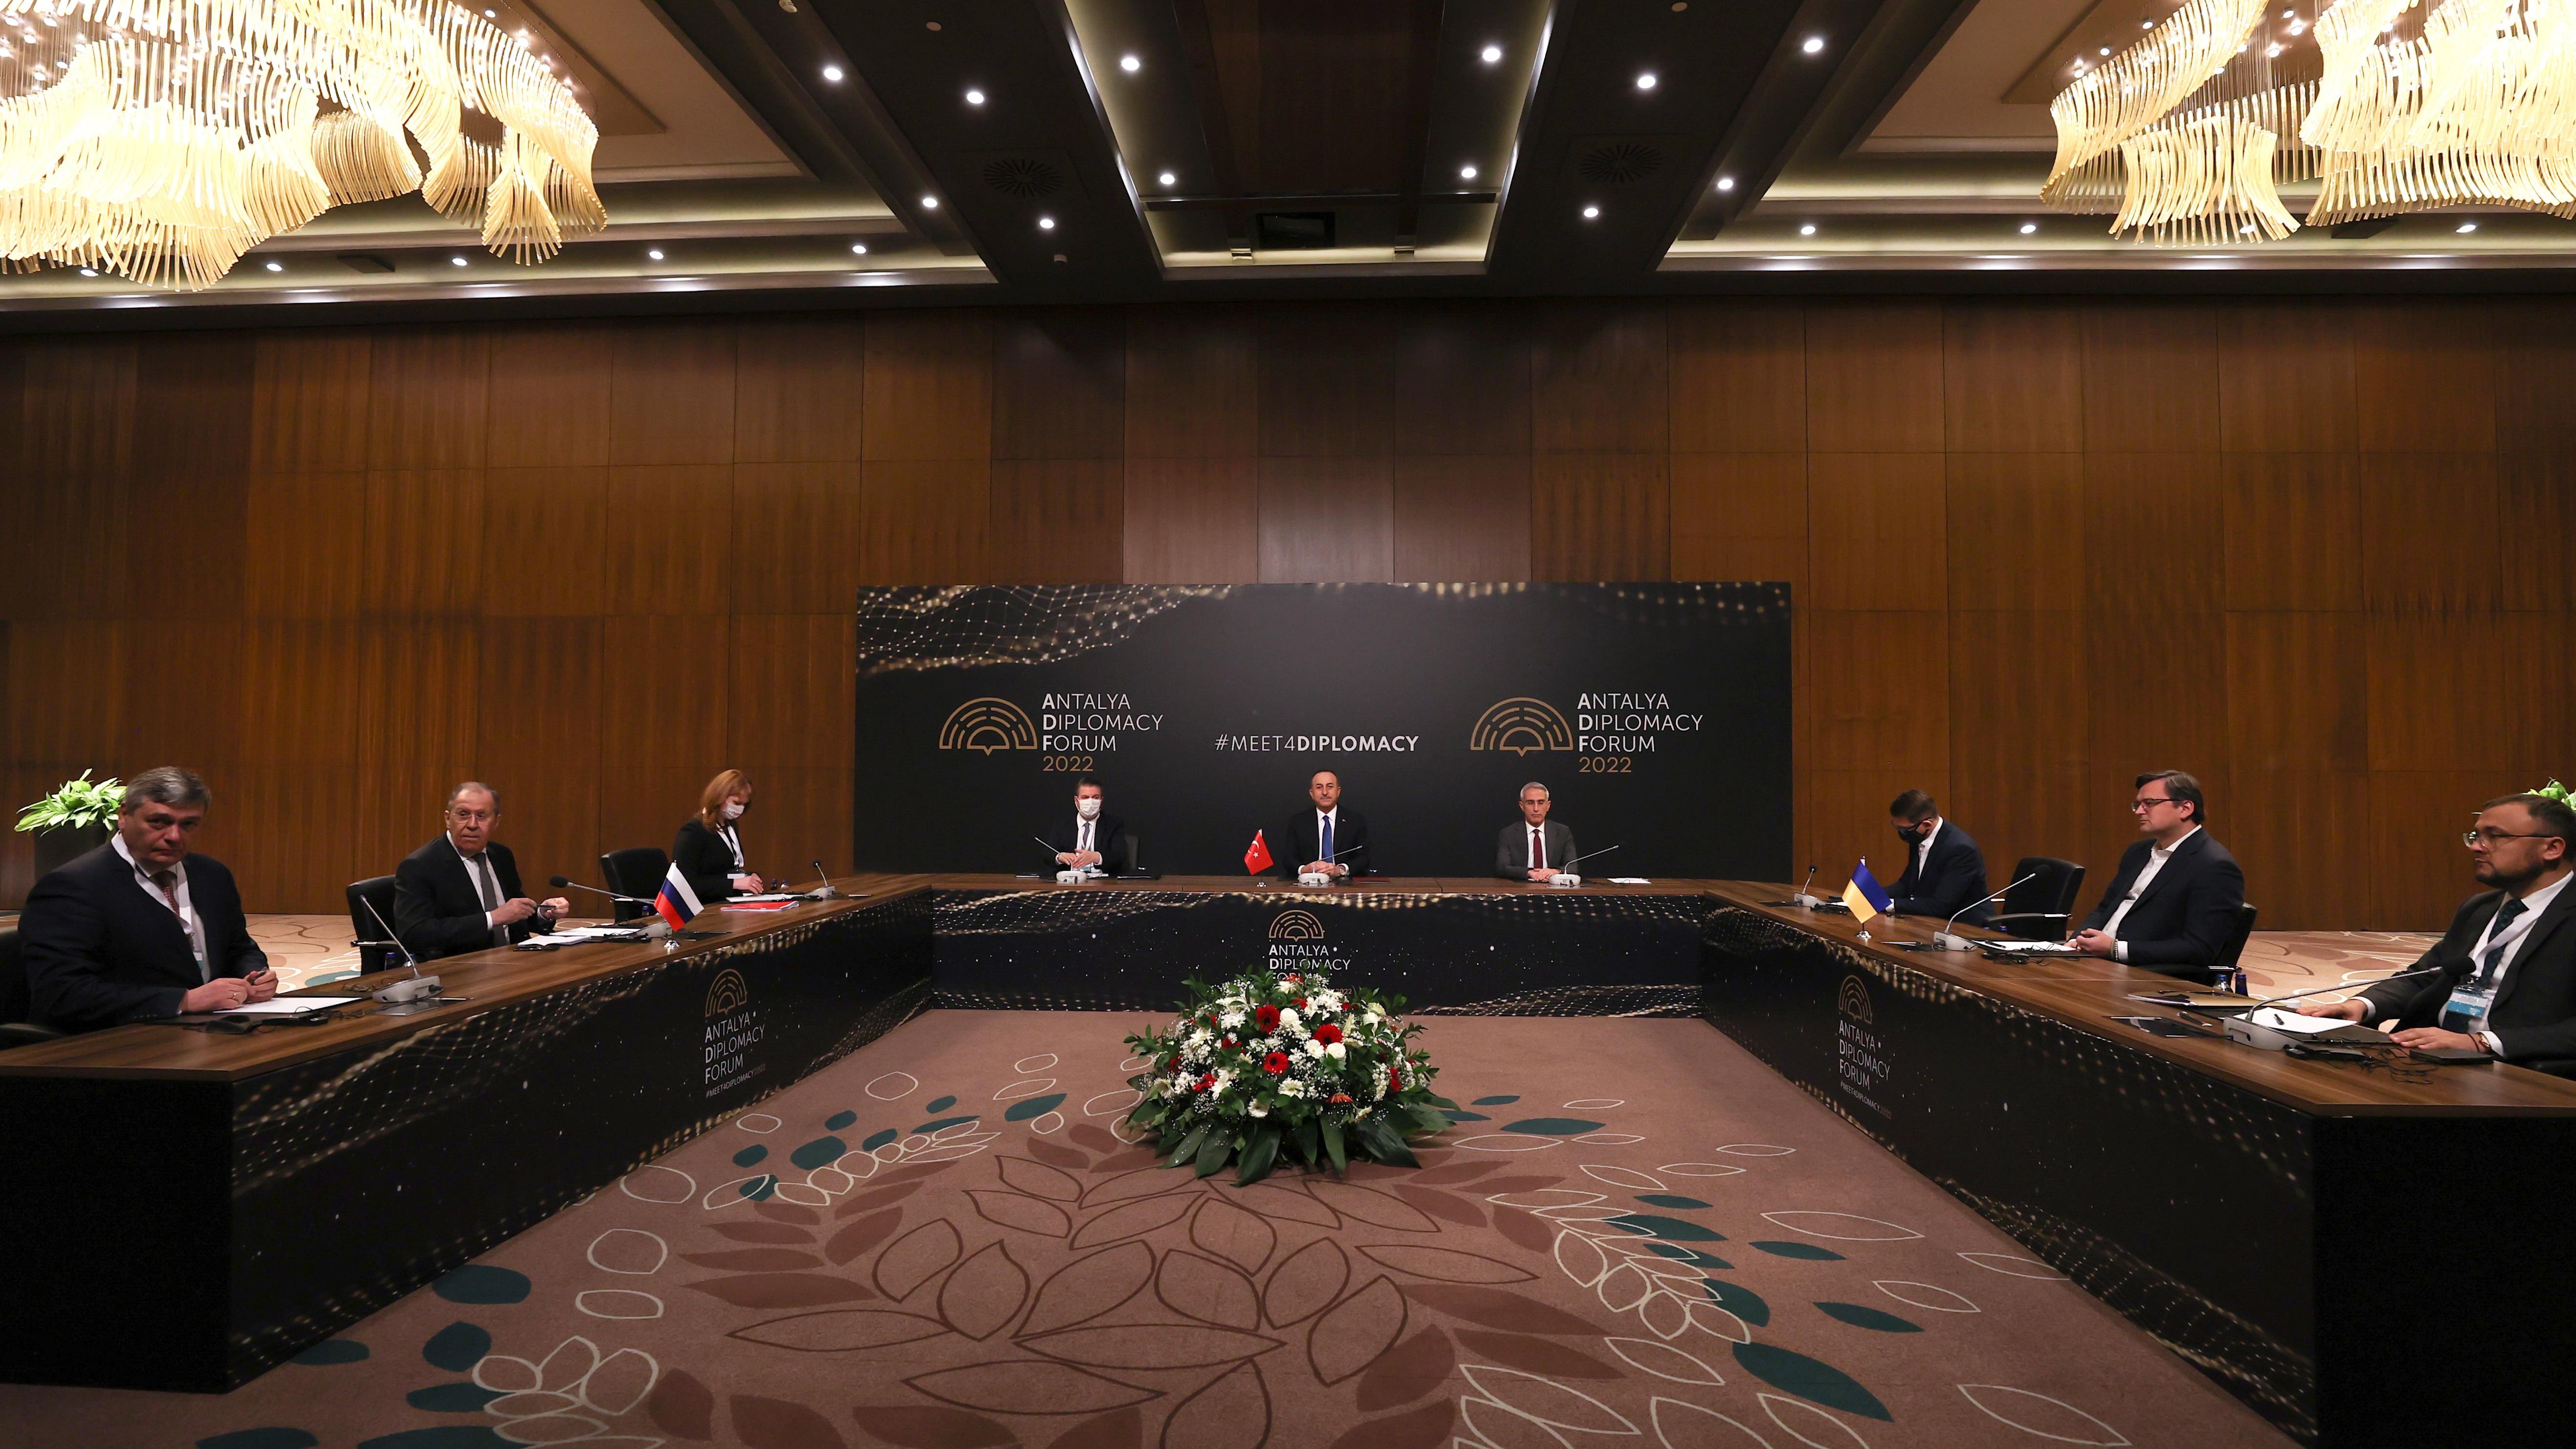 دومین اجلاس مجمع دیپلماسی آنتالیا برگزار شد